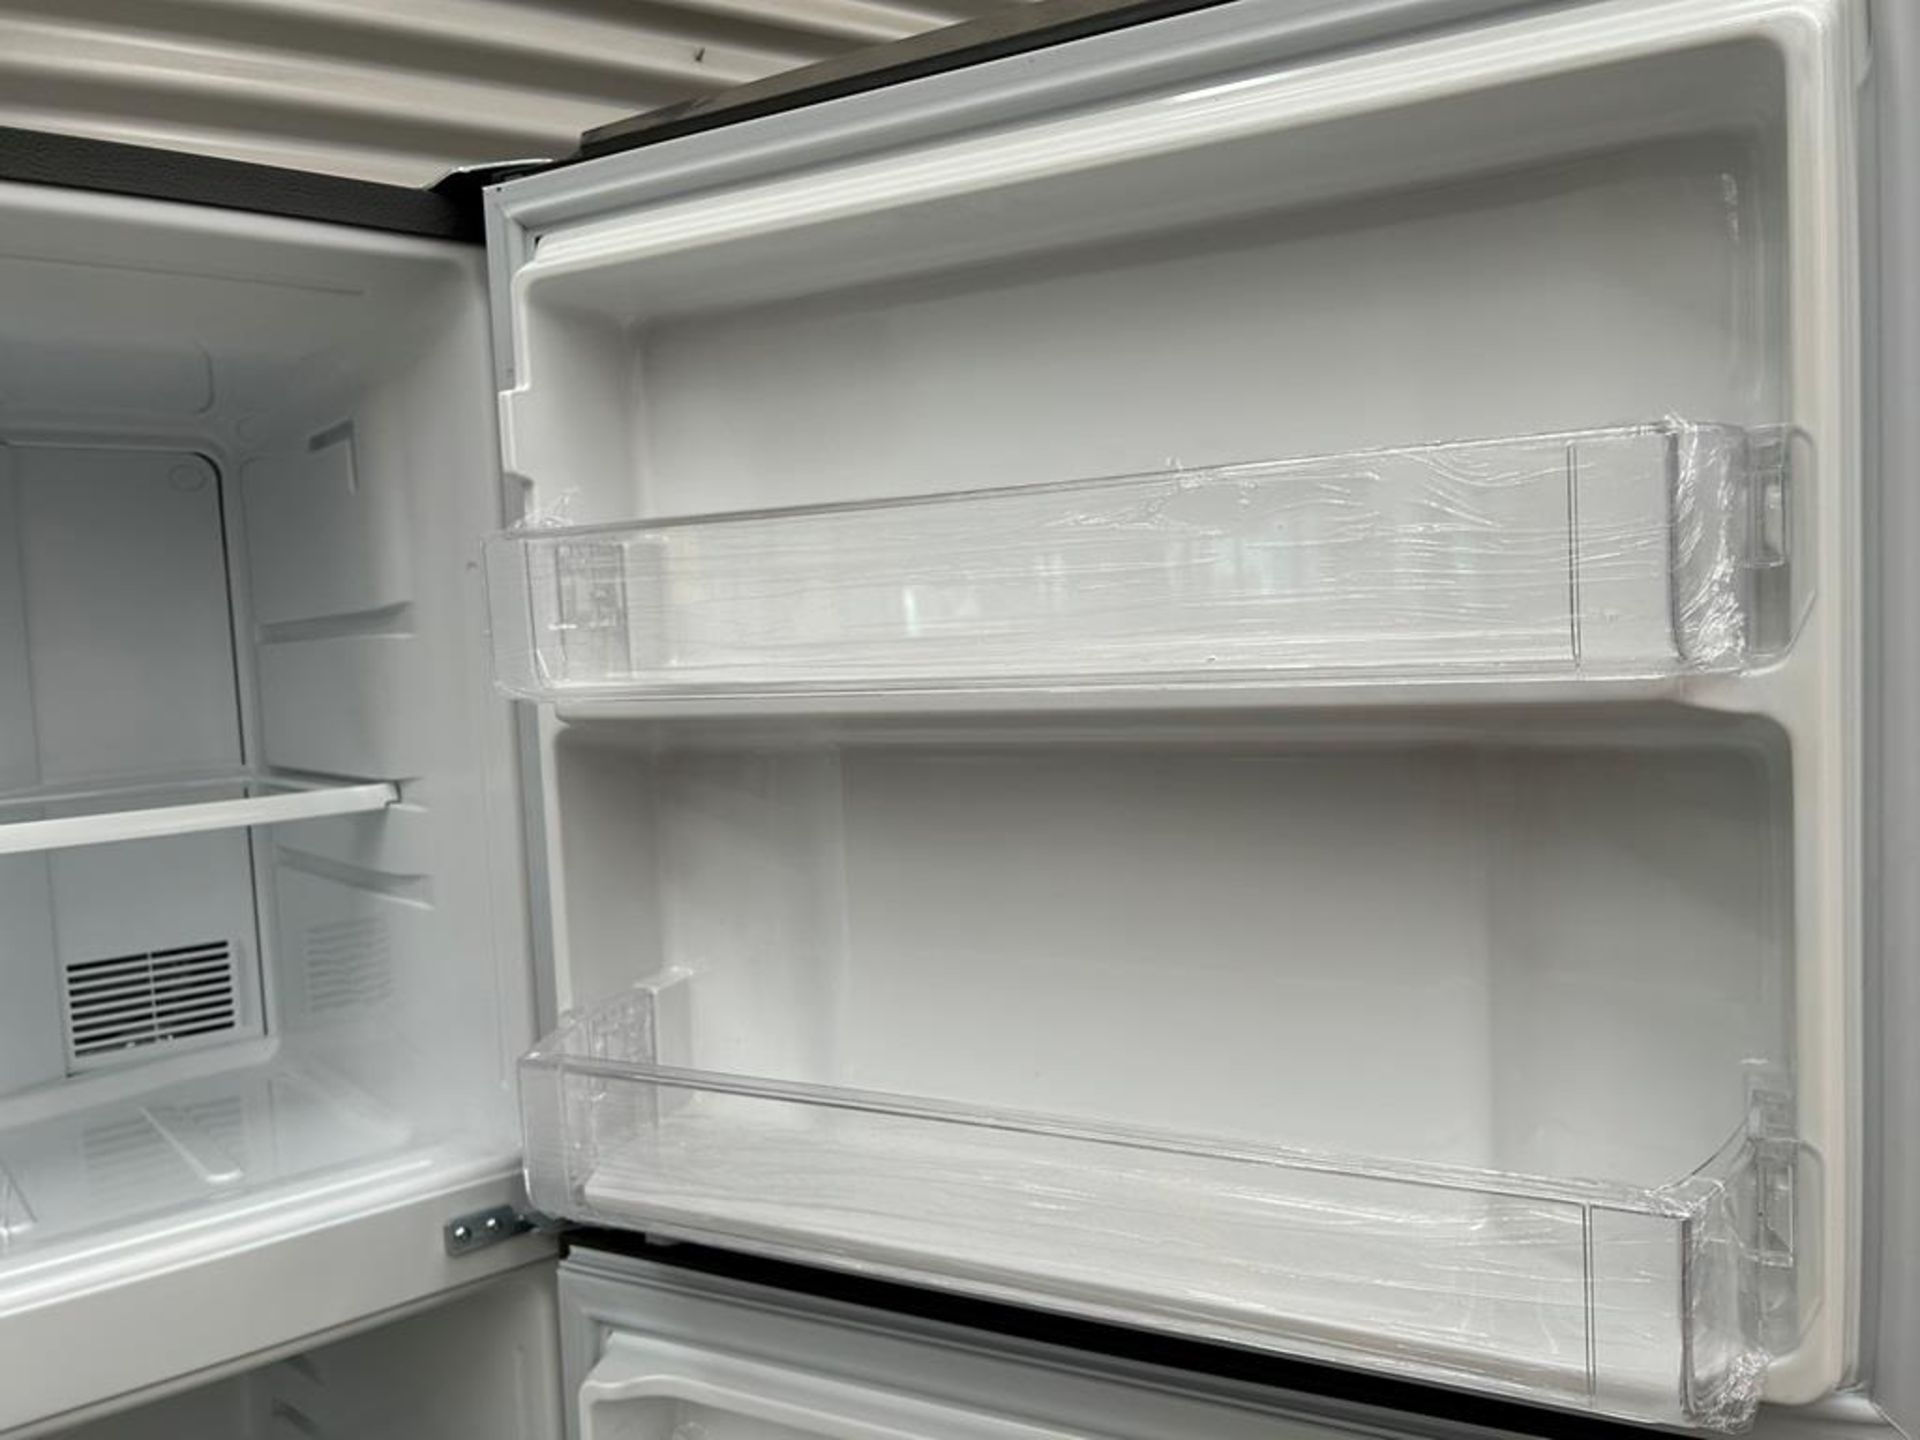 Lote de 2 refrigeradores contiene: 1 Refrigerador Marca MABE, Modelo RME360PVMRM0, Serie 01177, Col - Image 15 of 18